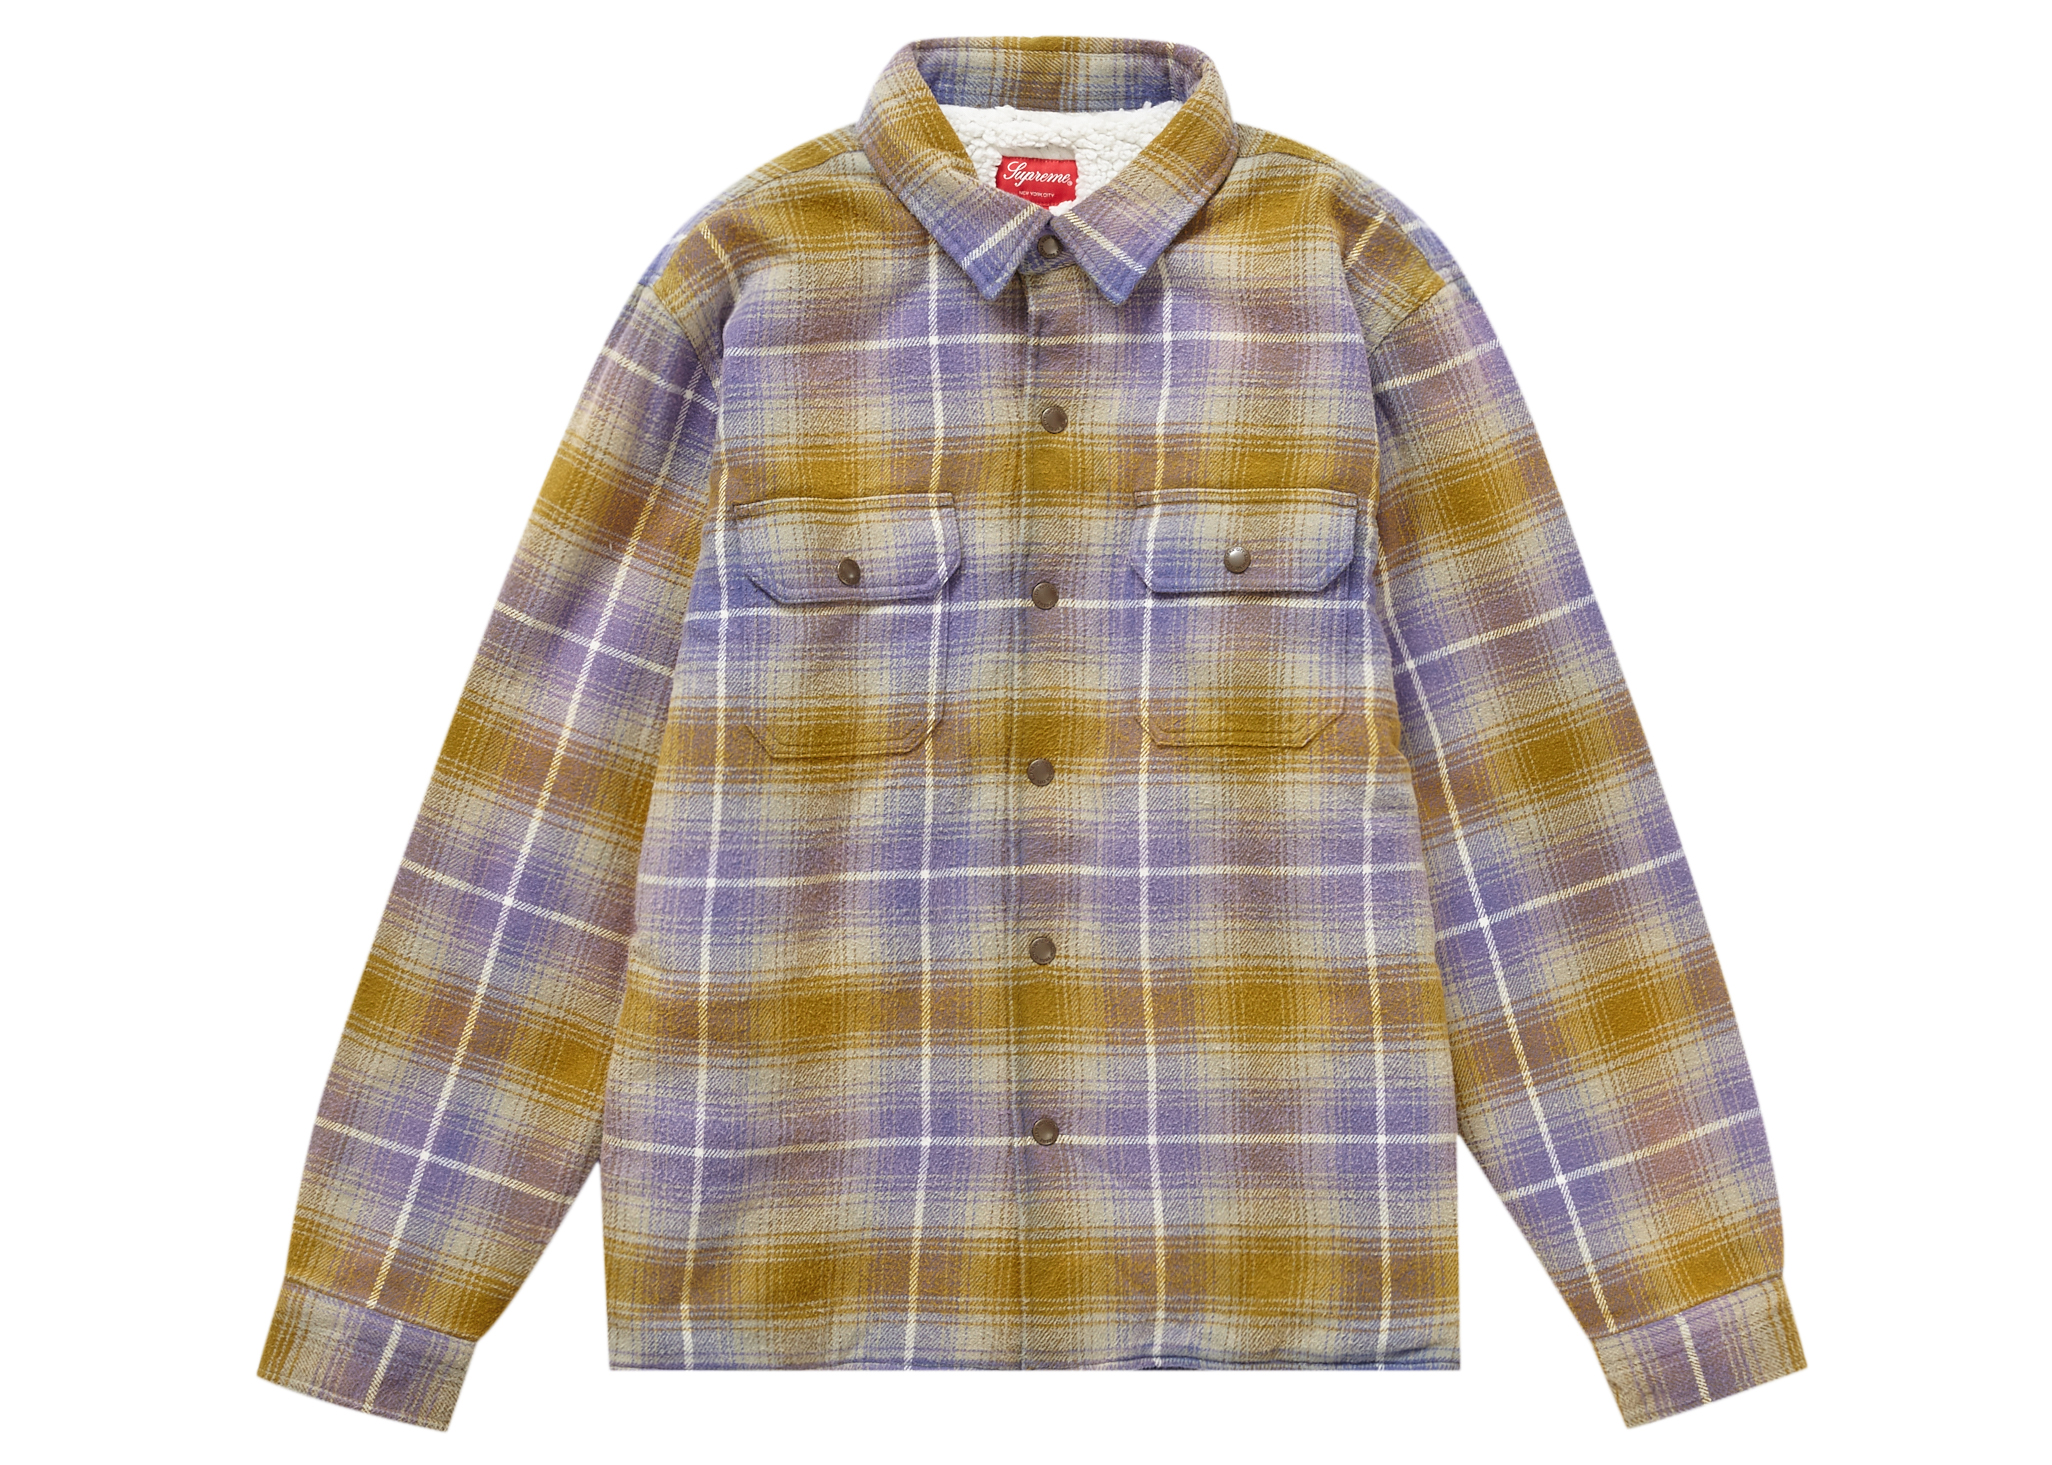 新品 supreme flannel shirt olive mサイズ